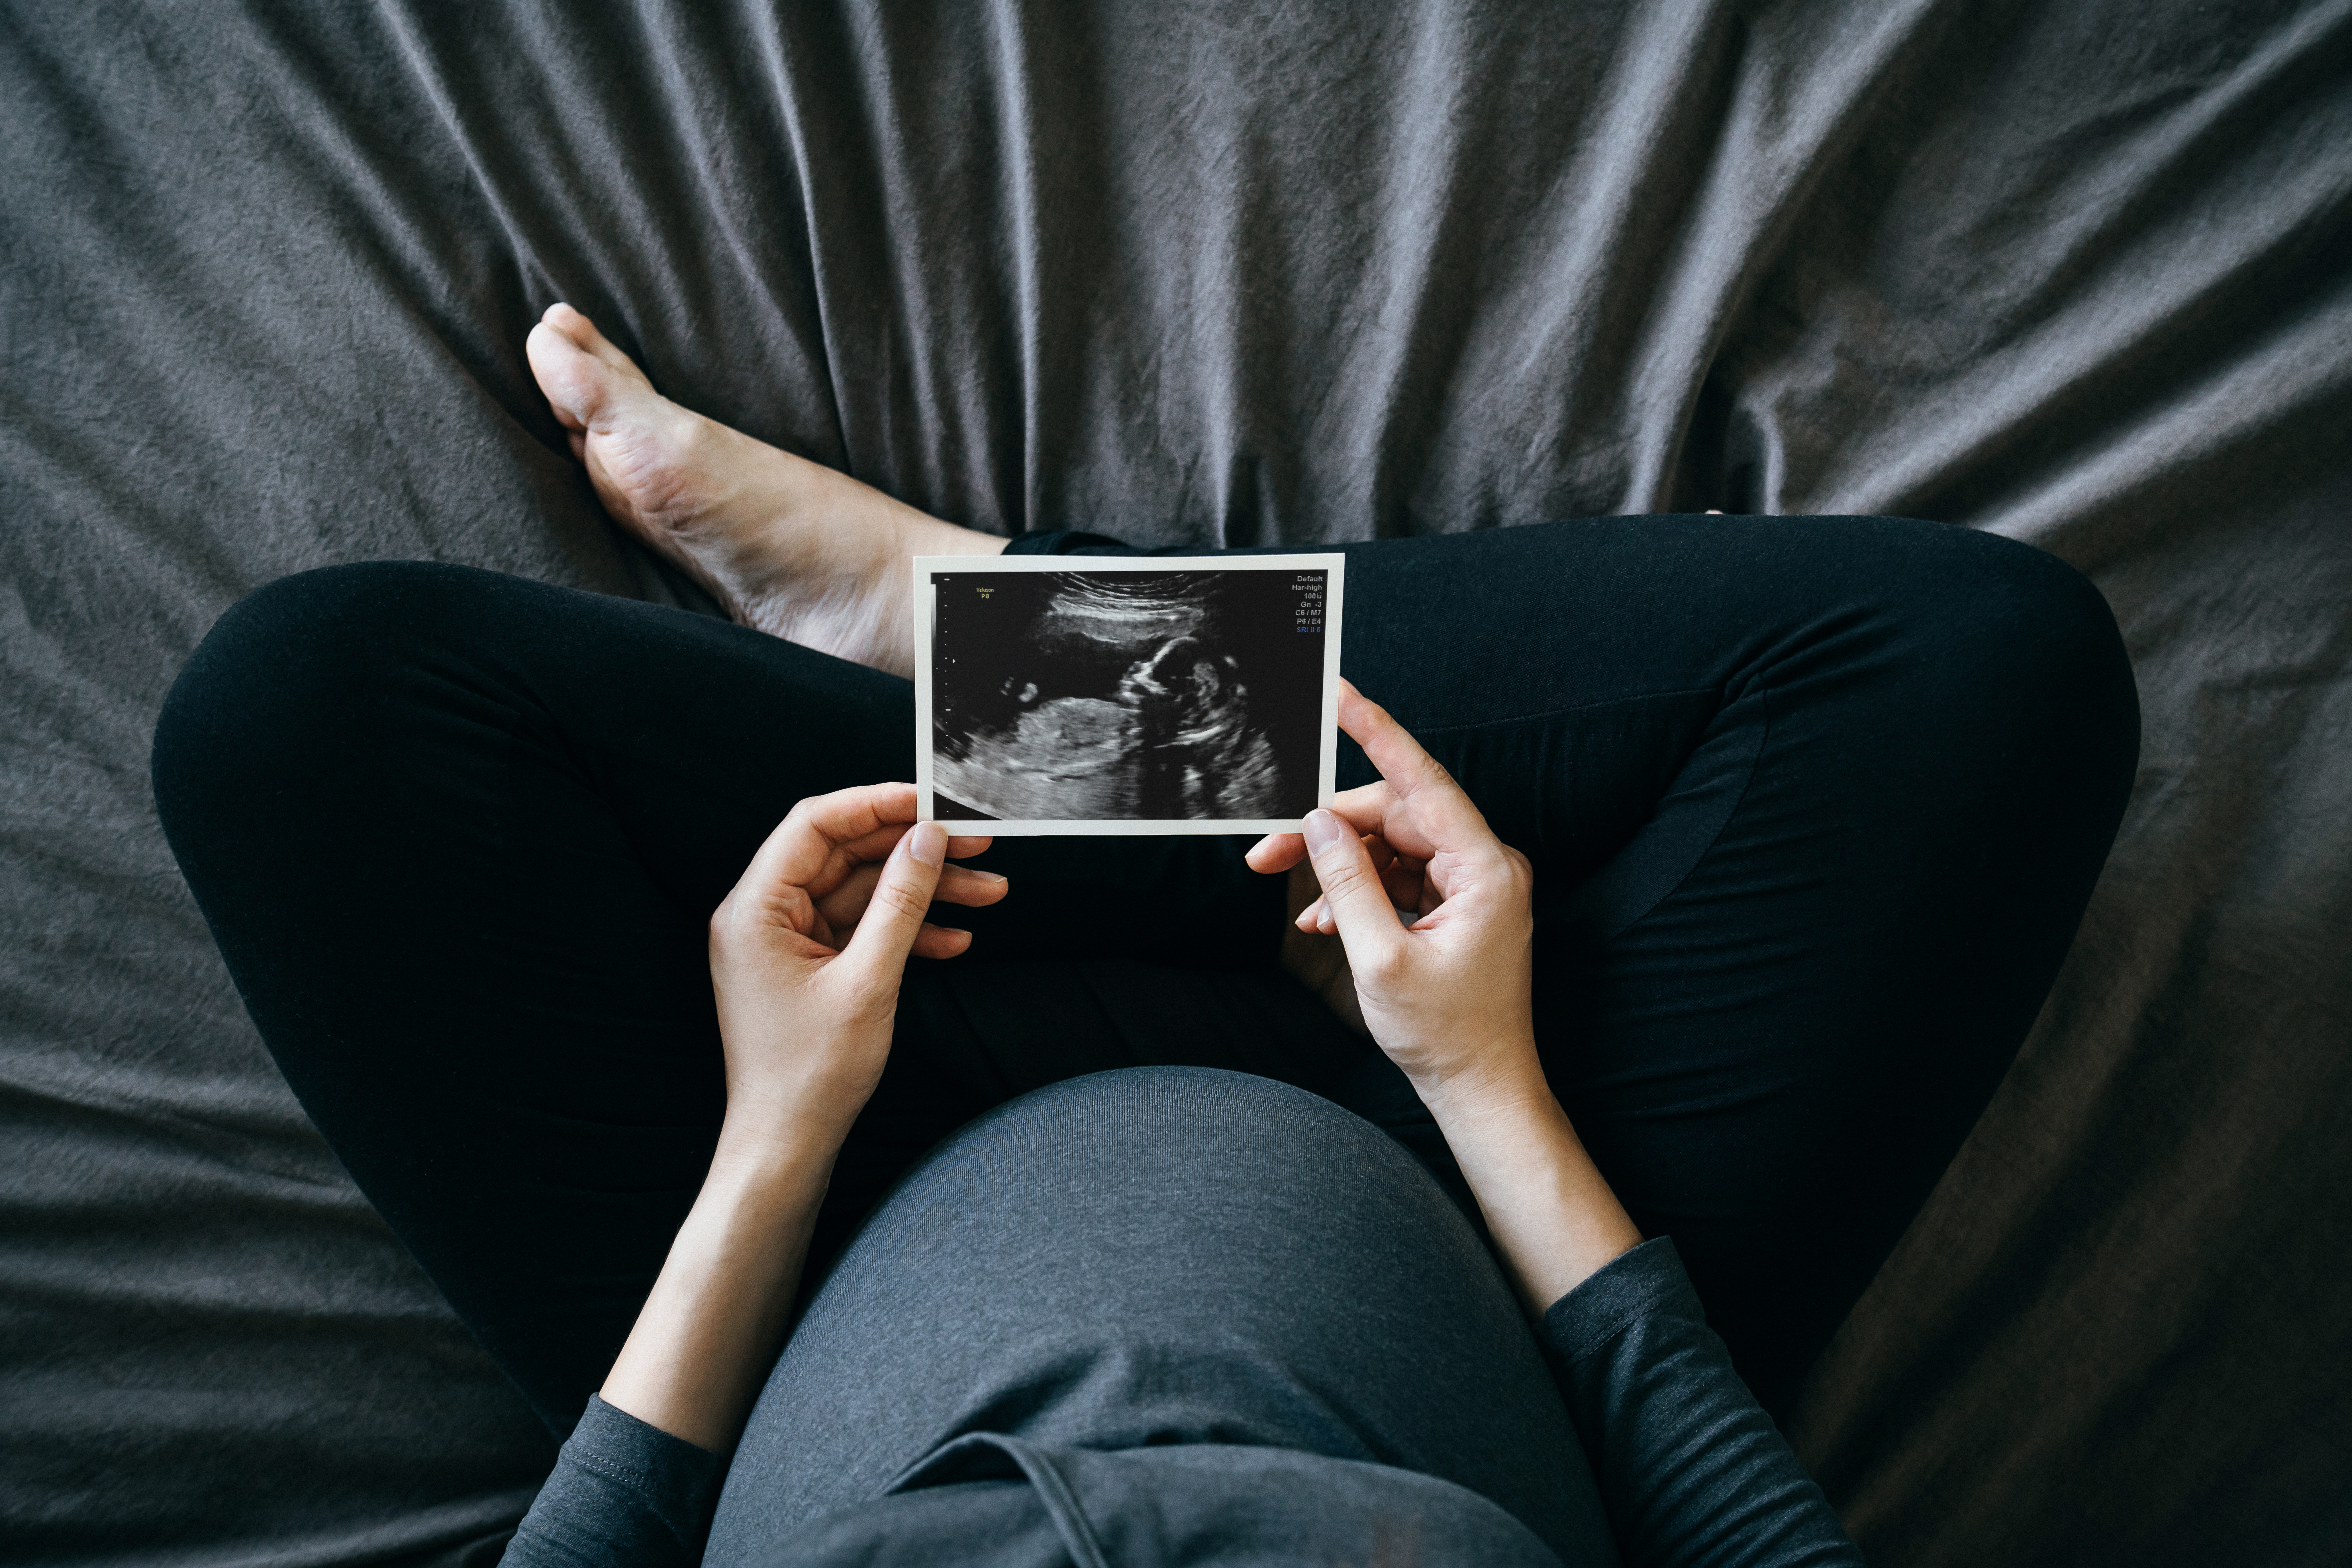 Eine schwangere Frau sitzt auf ihrem Bett und hält ein Ultraschallbild in der Hand | Quelle: Shutterstock